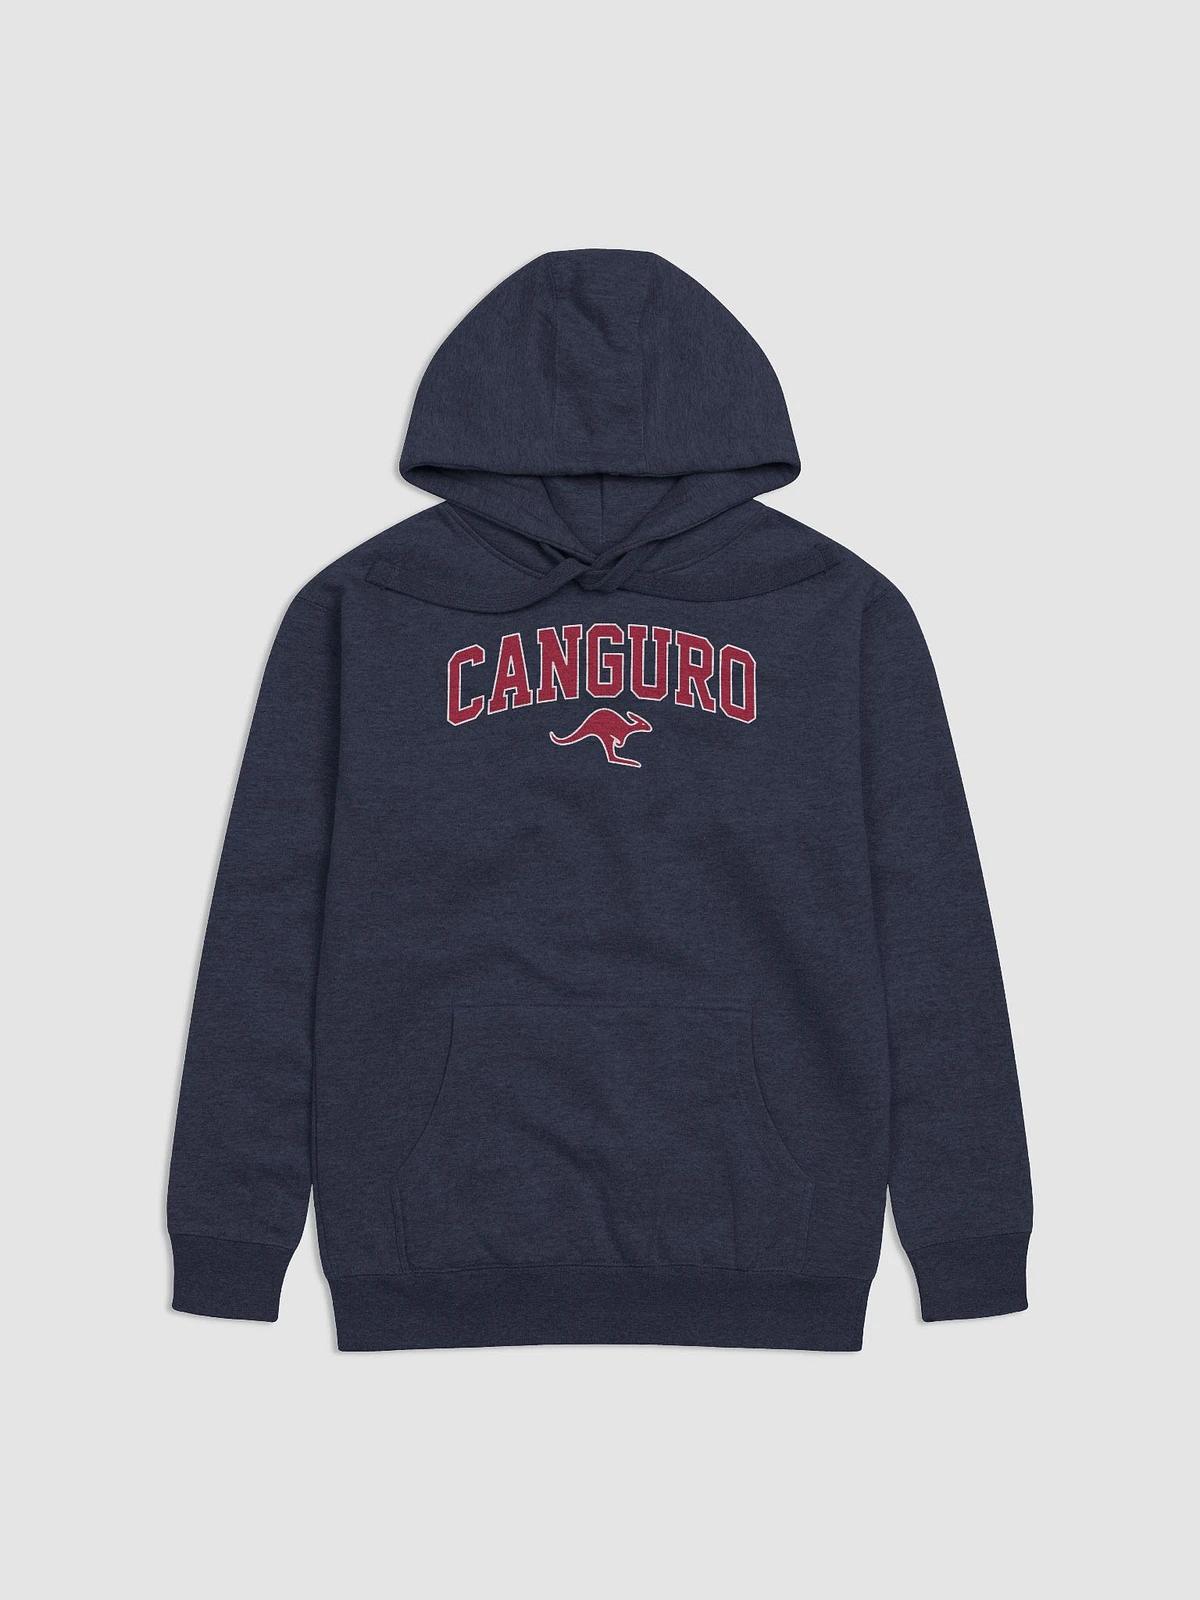 Canguro Full Zip Color Block Umbro Hombre - Grm — Clássico